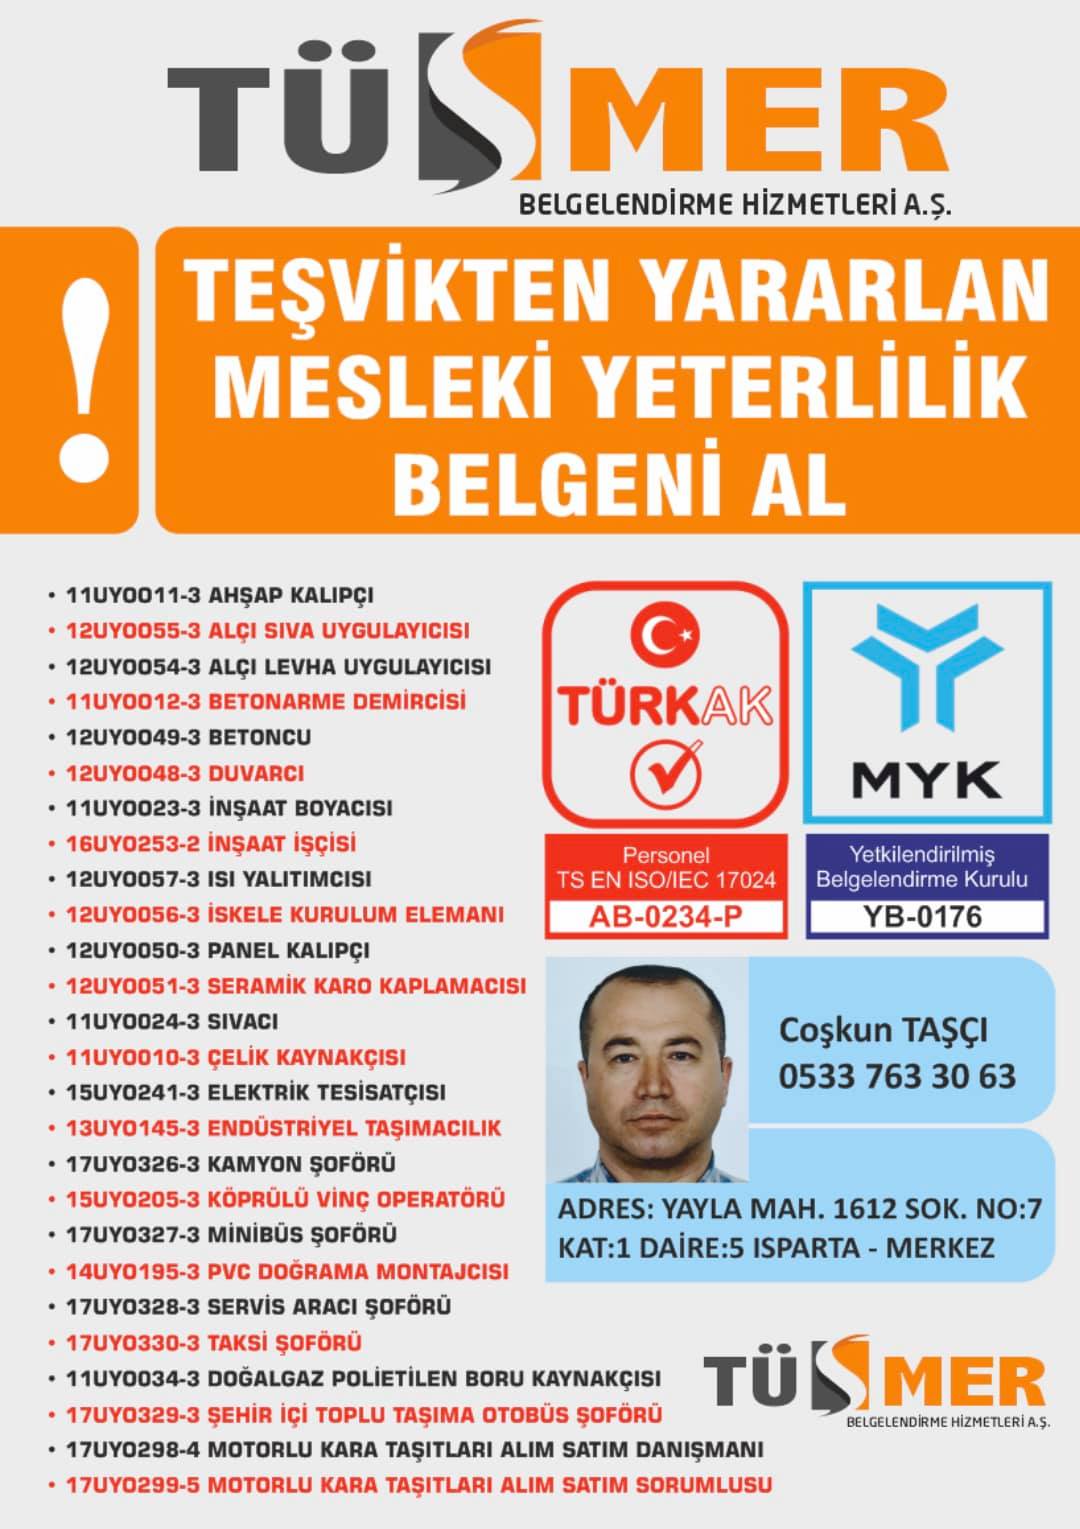 MYK MESLEKİ YETERLİLİK BELGESİ Fikirtepe Kadıköy İstanbul